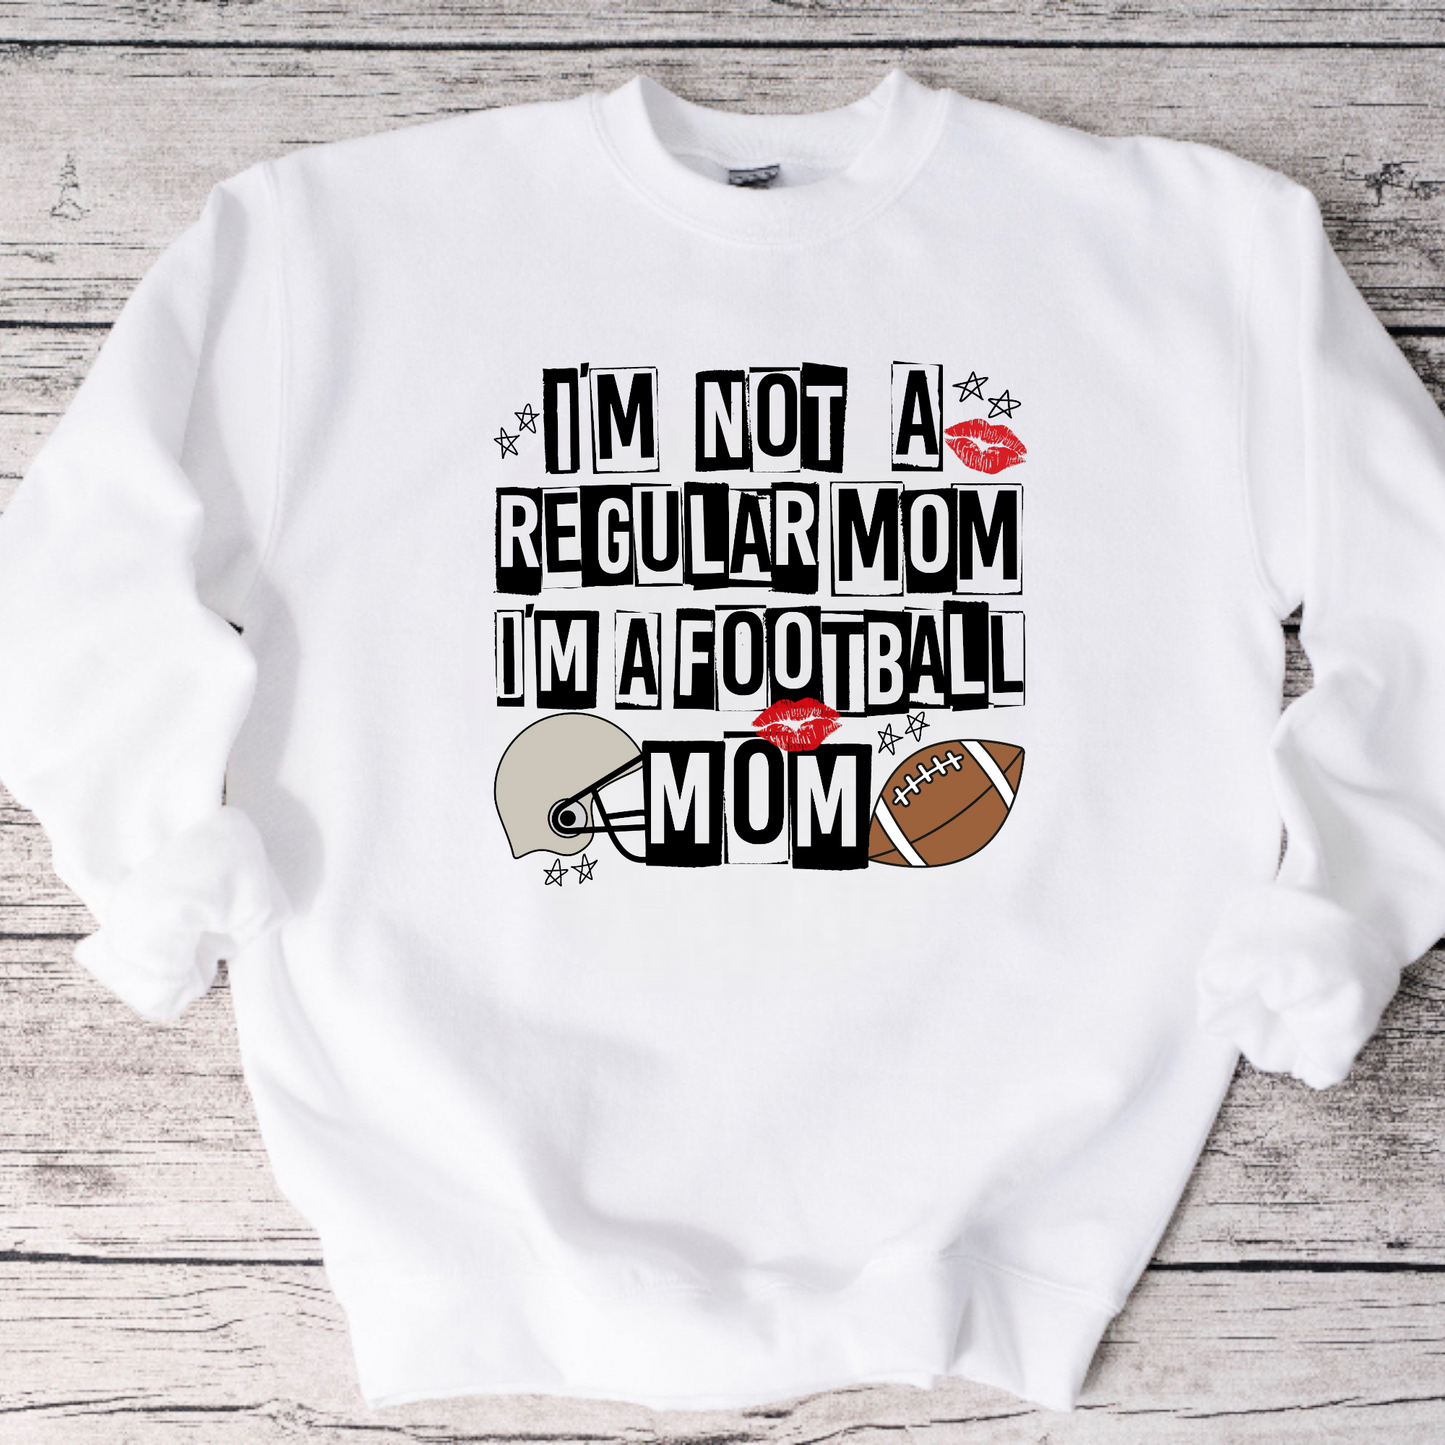 I’m not a Regular Mom Football Crewneck Sweatshirt or Tee